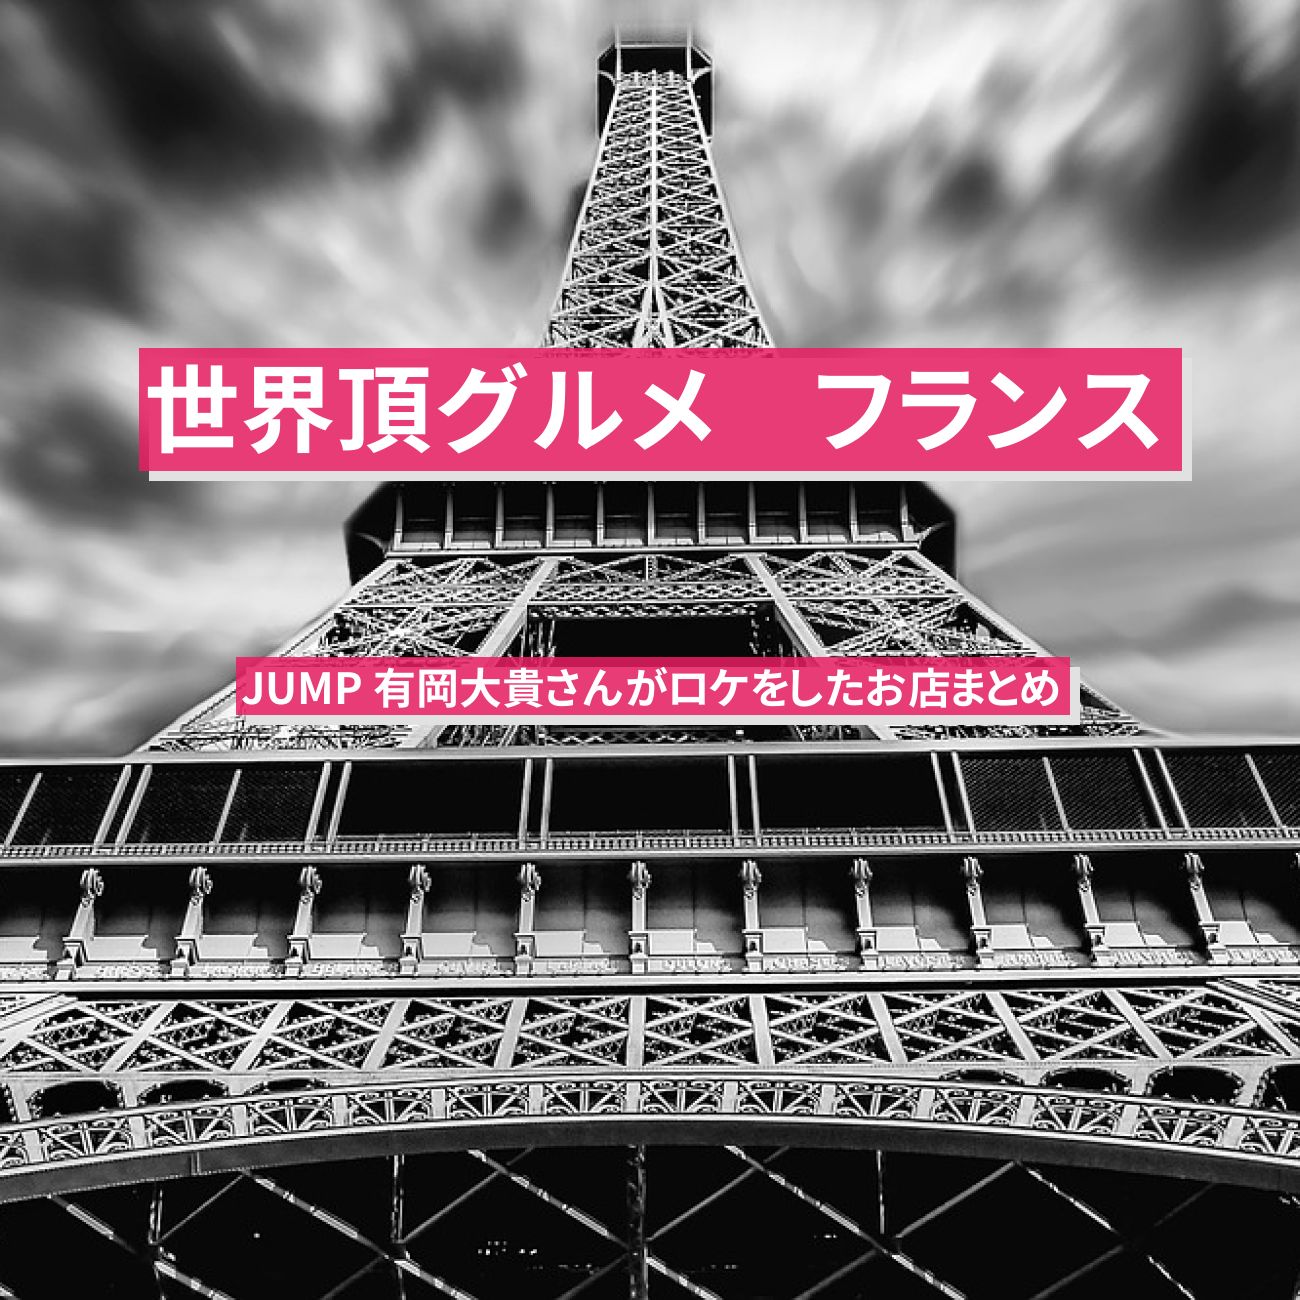 【世界頂グルメ】フランス・パリで有岡大貴さんがロケをした『クロガー・ミャムミャム・カスレ・タルティフレット・アリゴ』お店まとめ